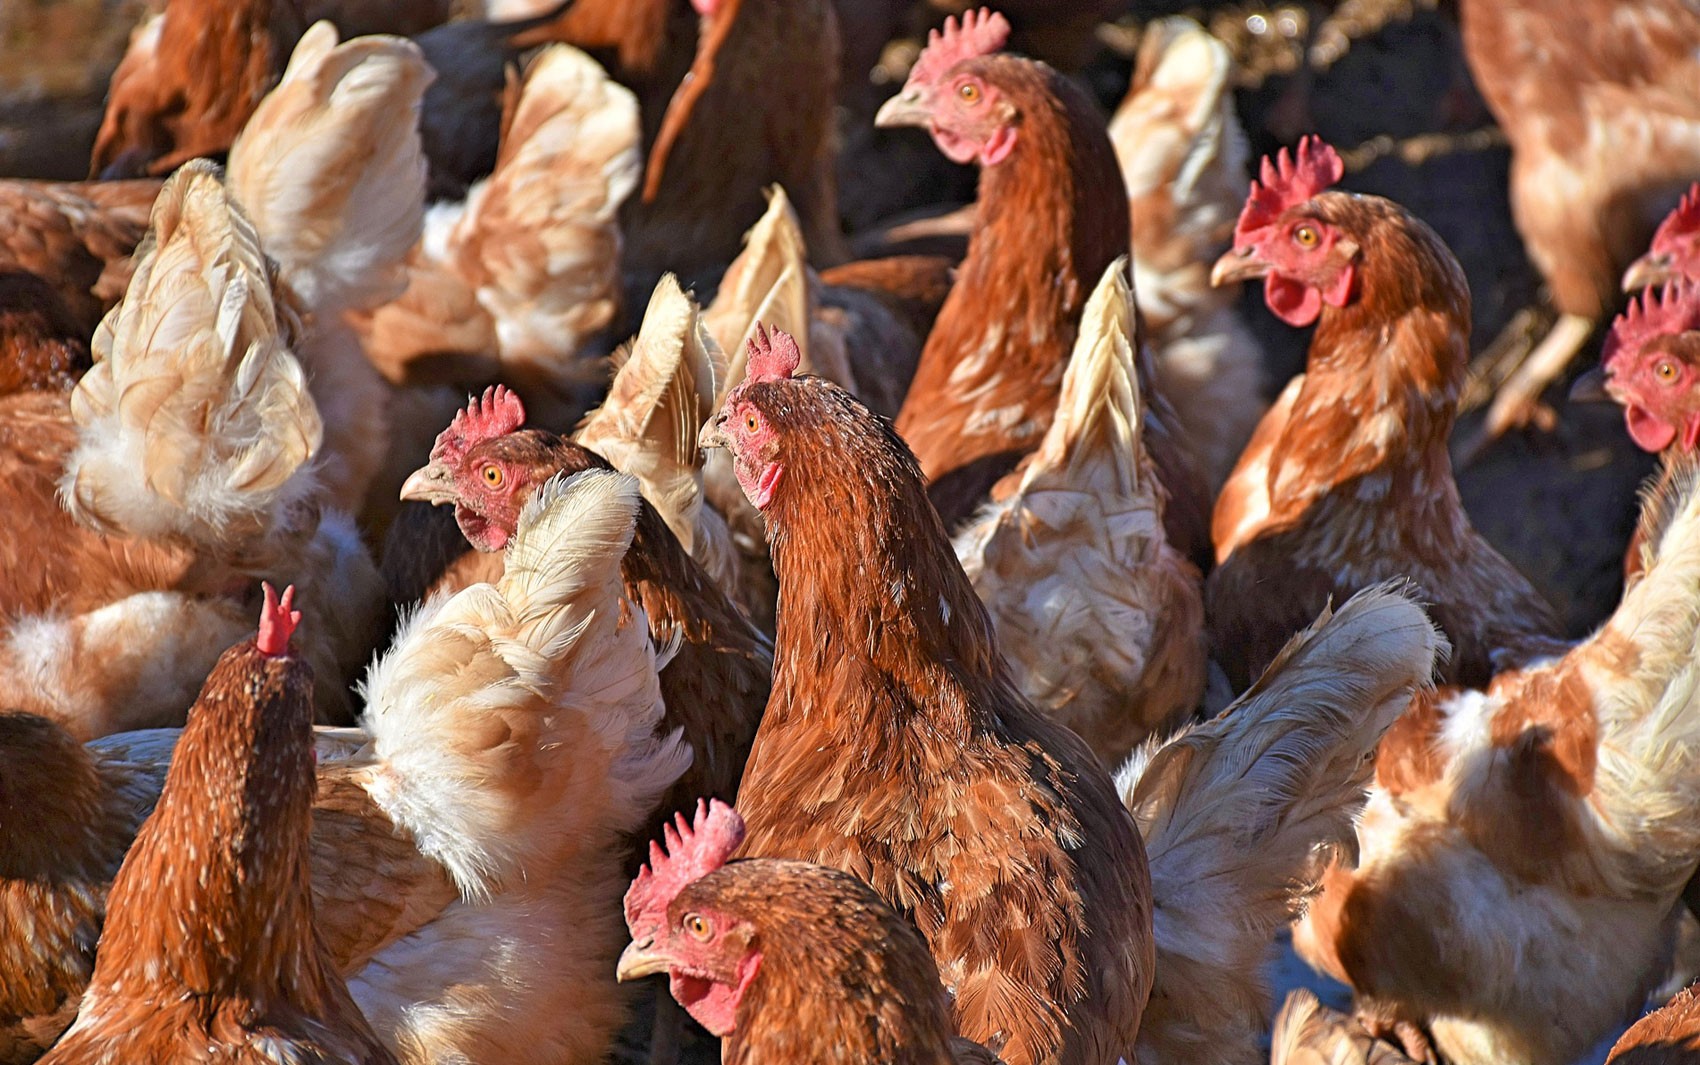 Onda de calor mata 400 mil galinhas no Uruguai